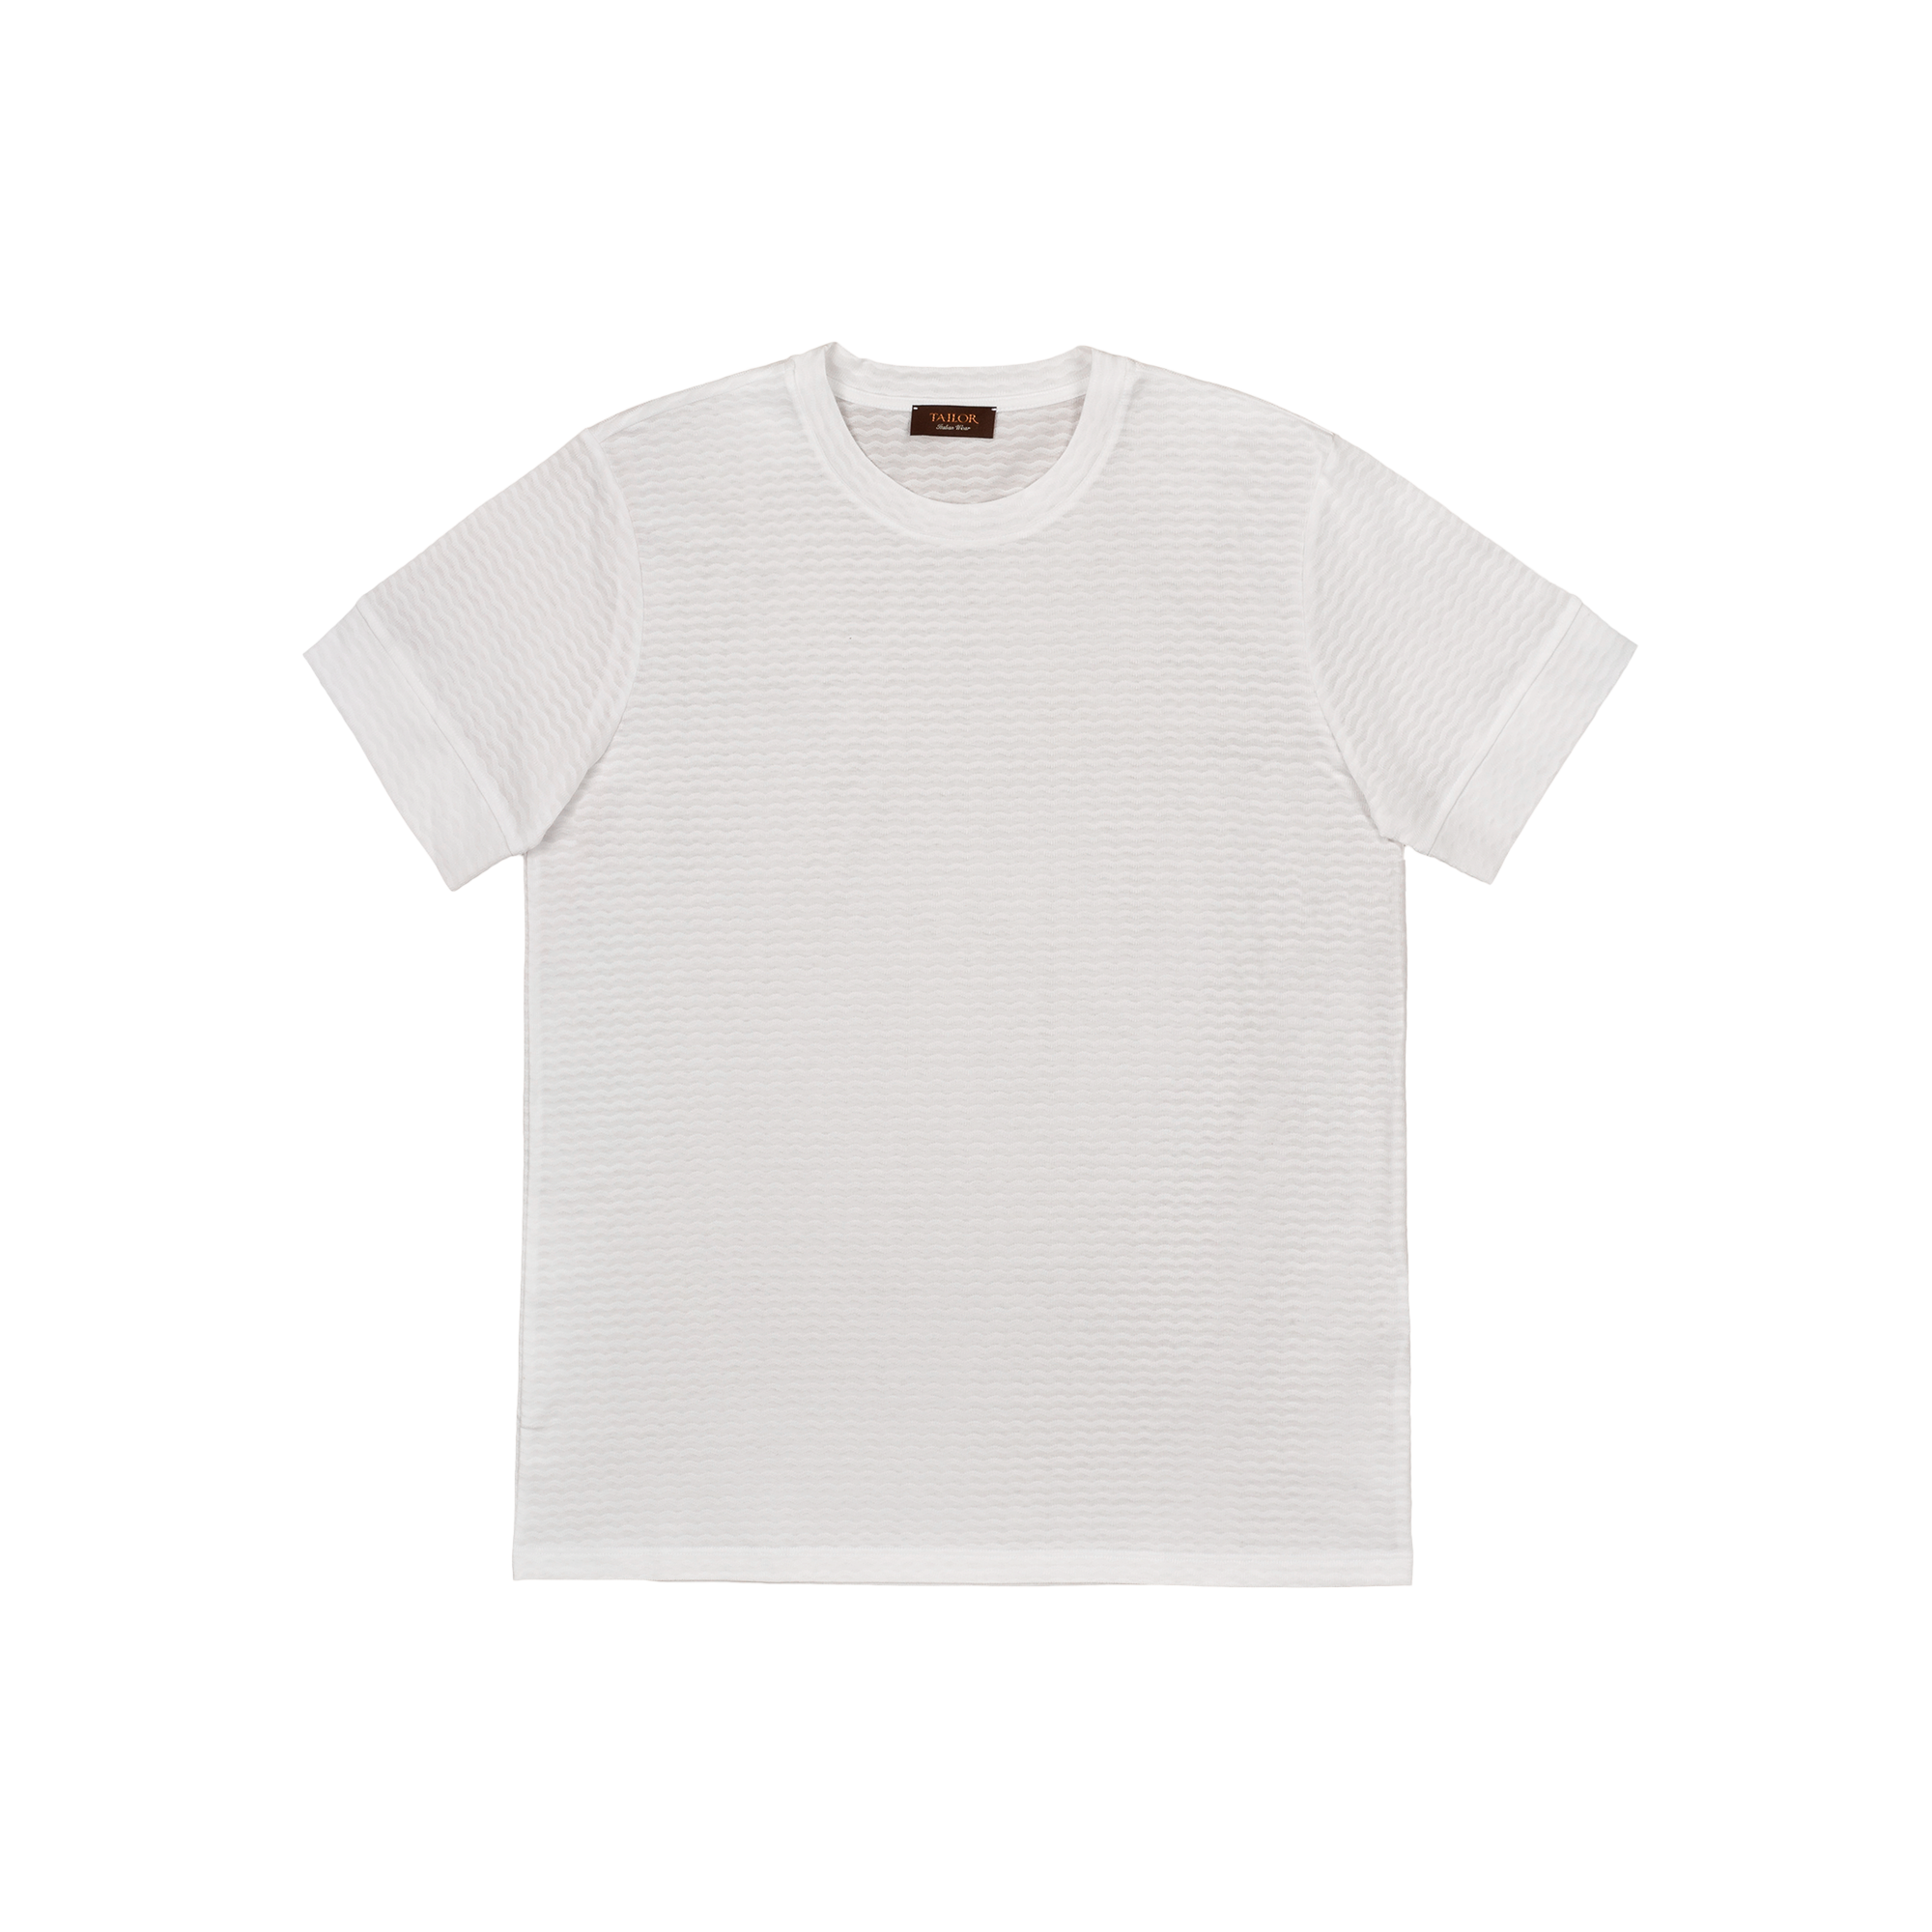 T-shirt bianca particolare